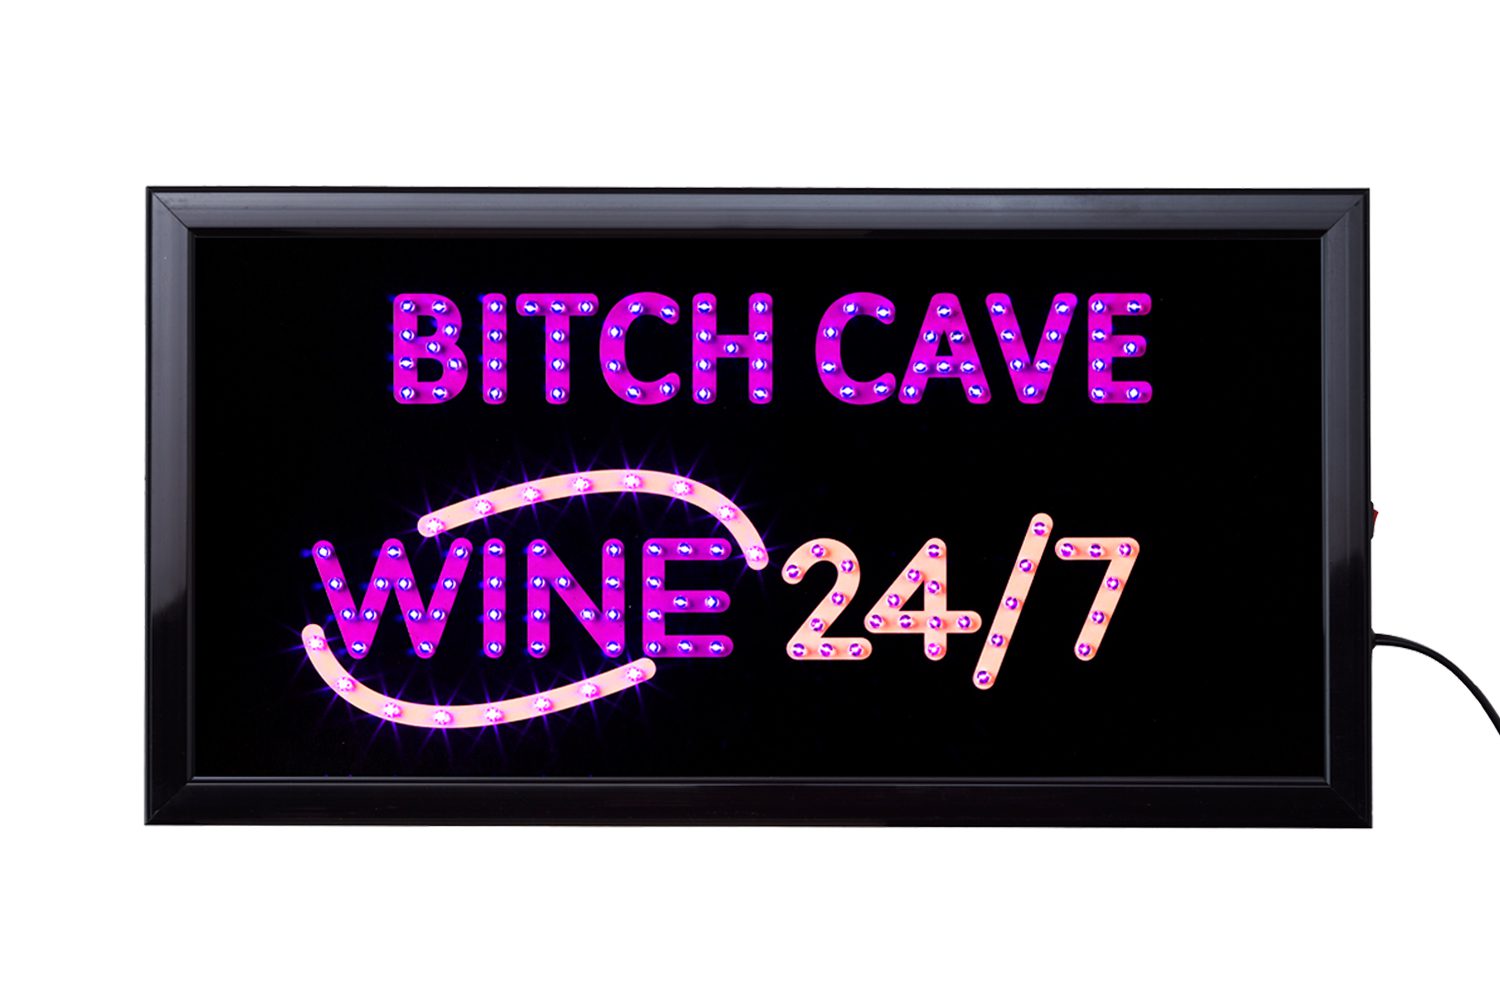 LED Bord Bitch Cave 50 x 25 cm